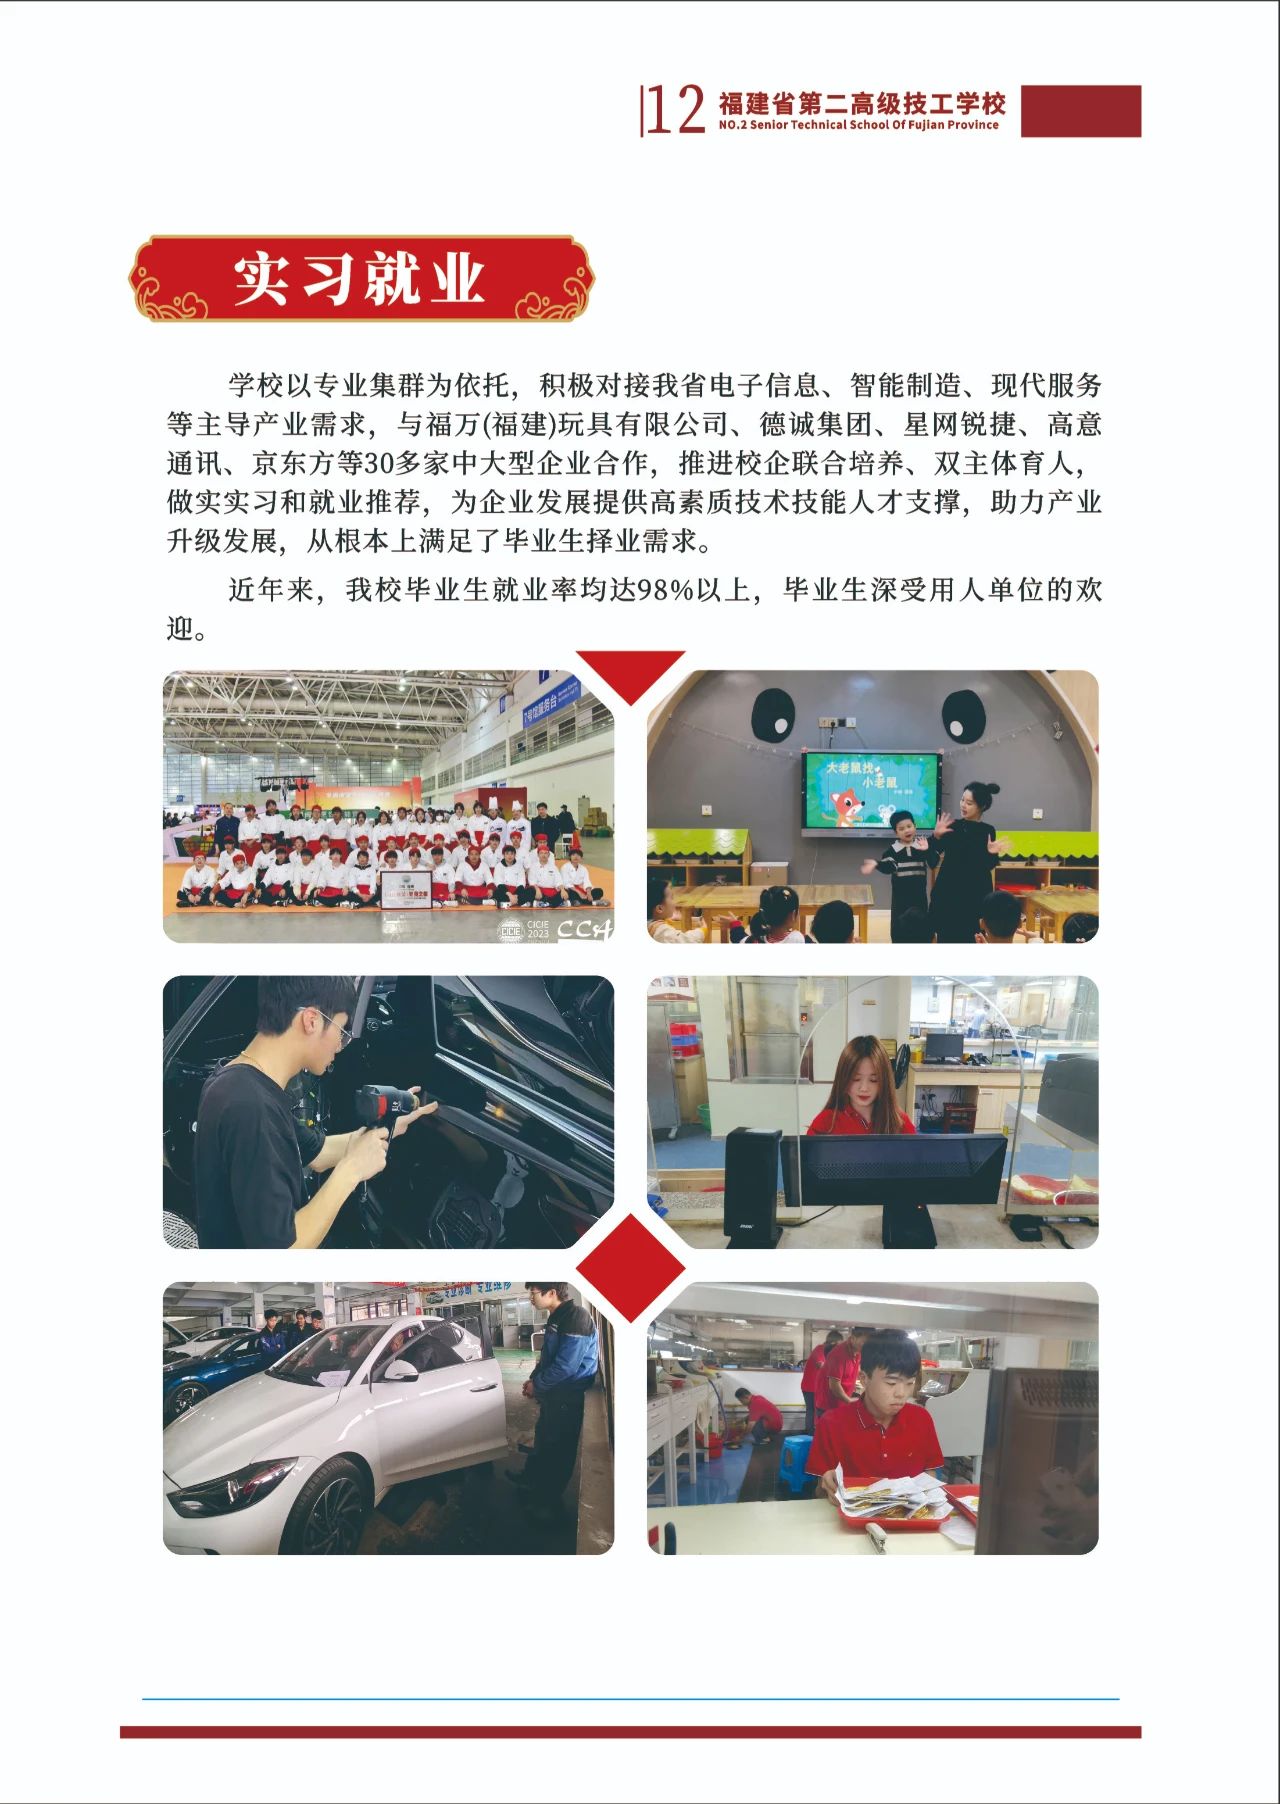 福建省第二高级技工学校2023年招生简章